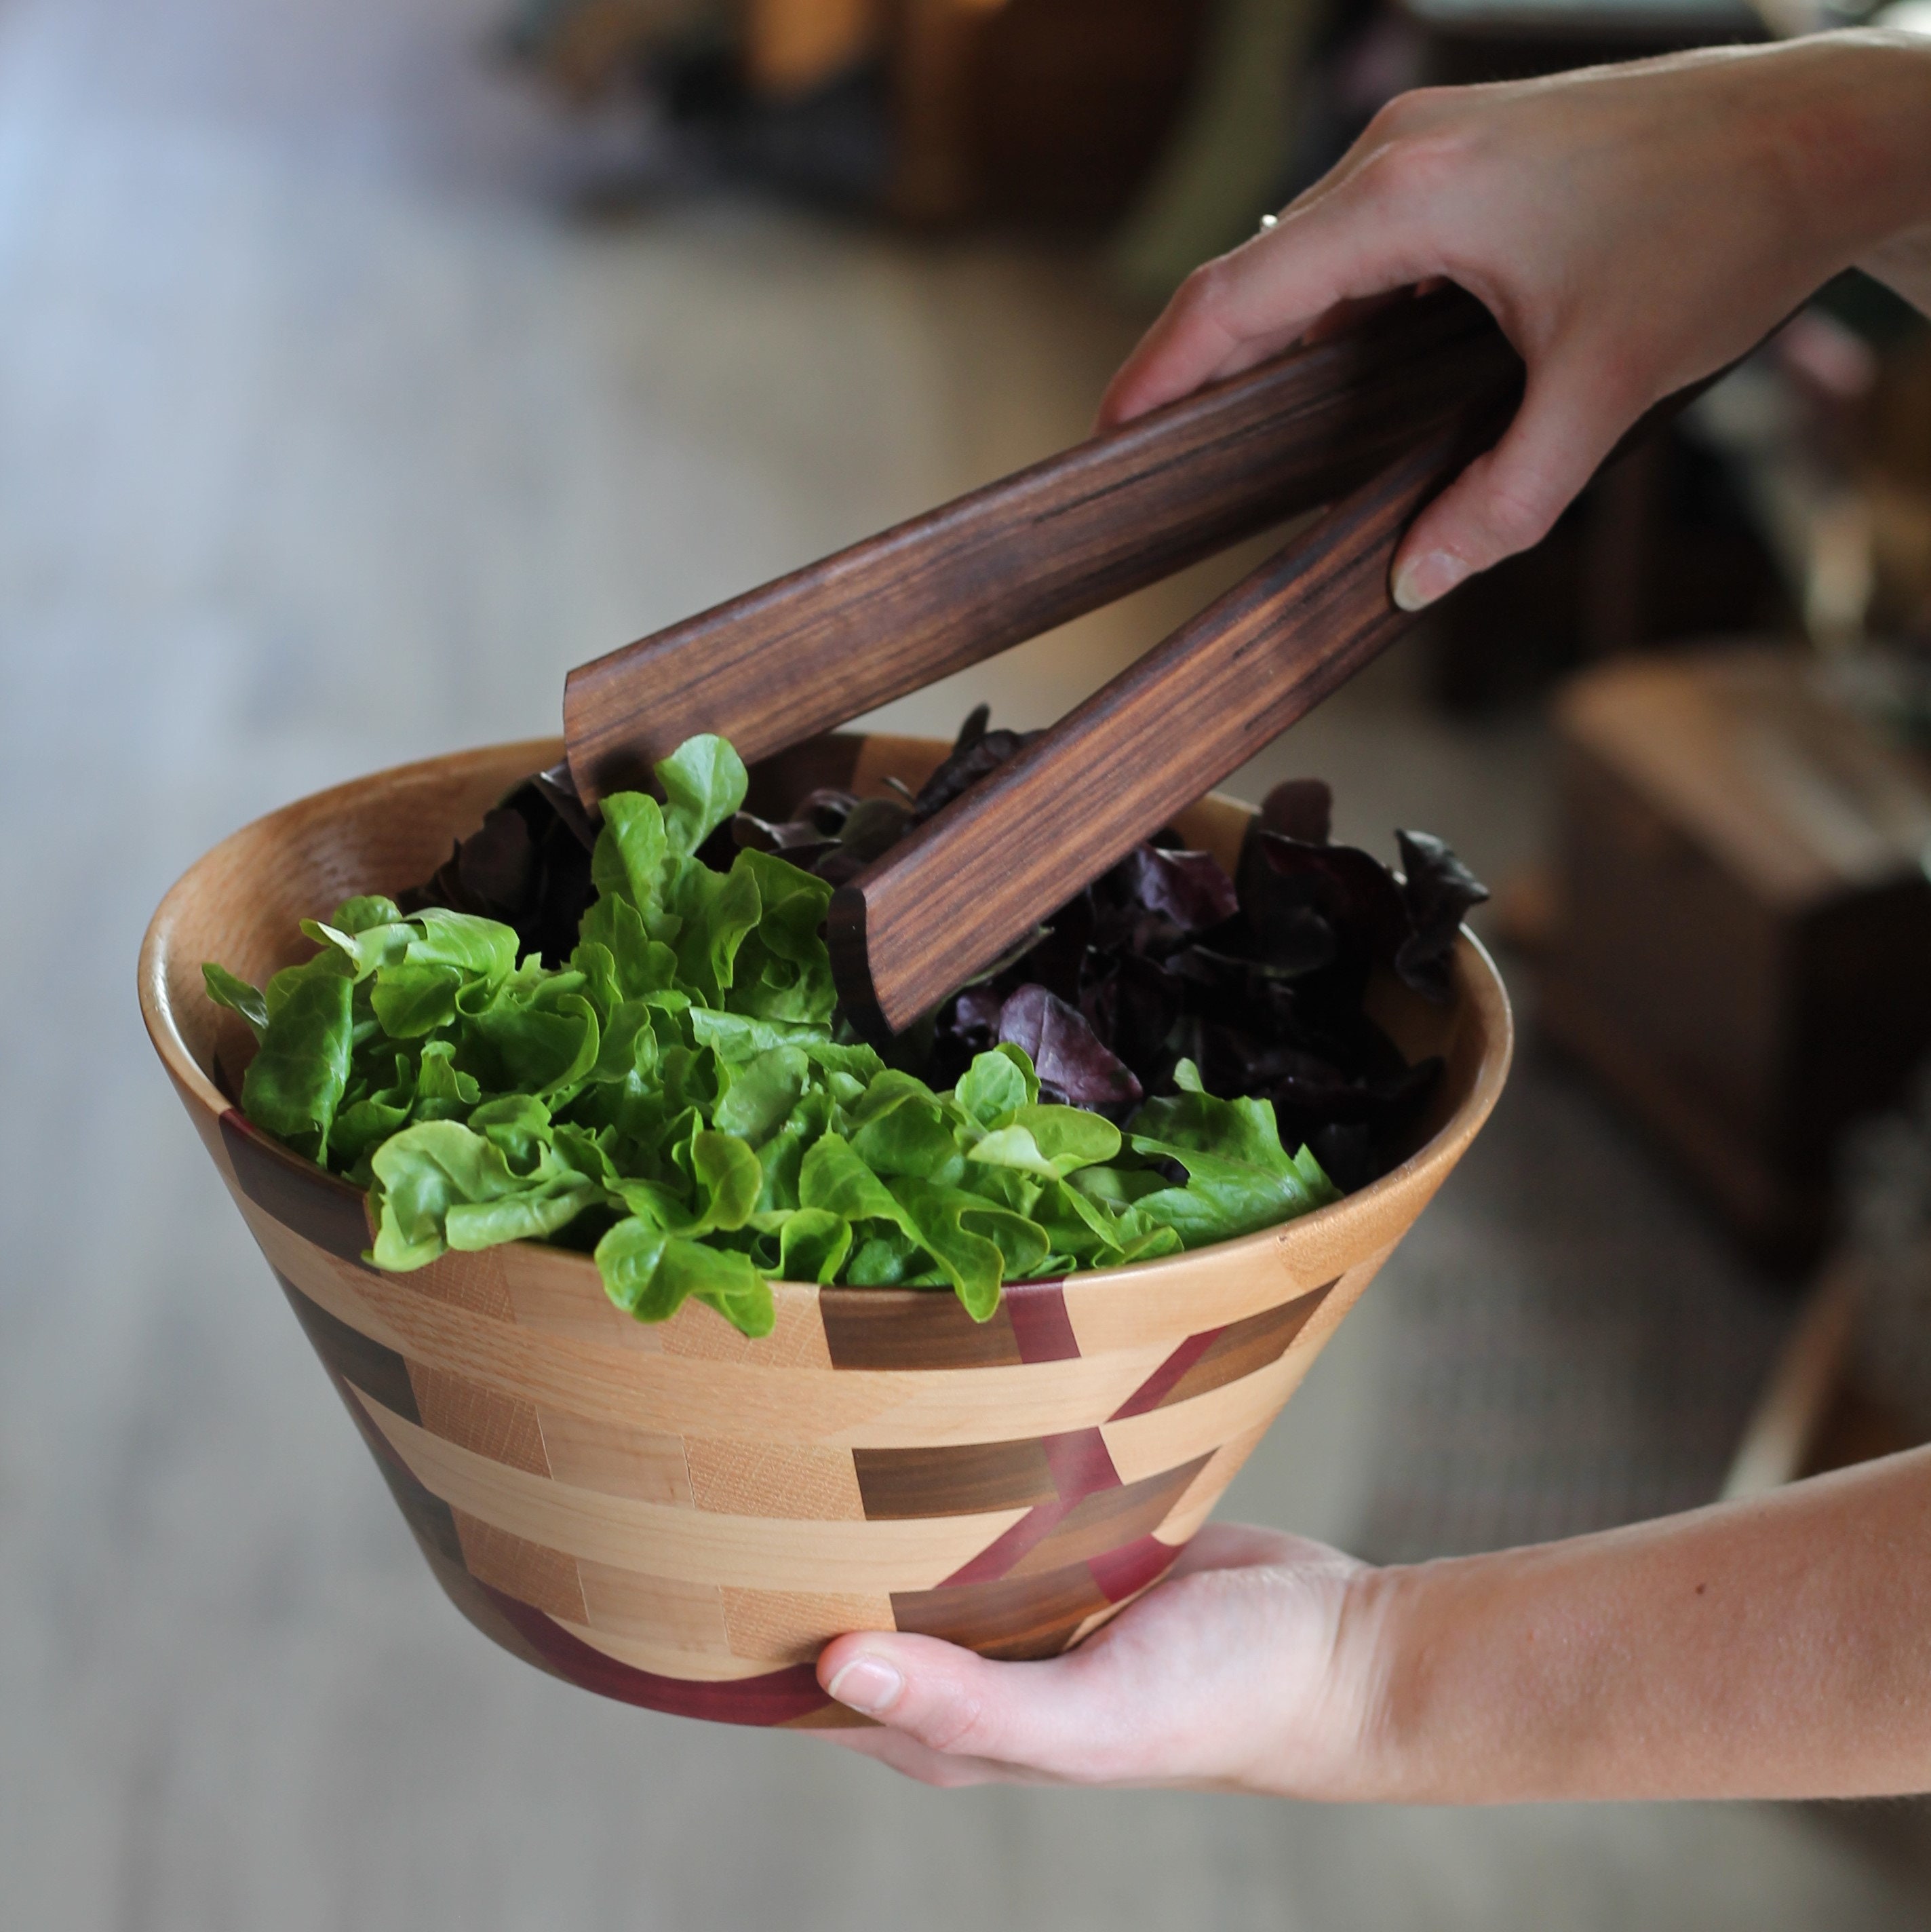 Matte Black Salad Tongs - Sleek One-Handed Design for Serving